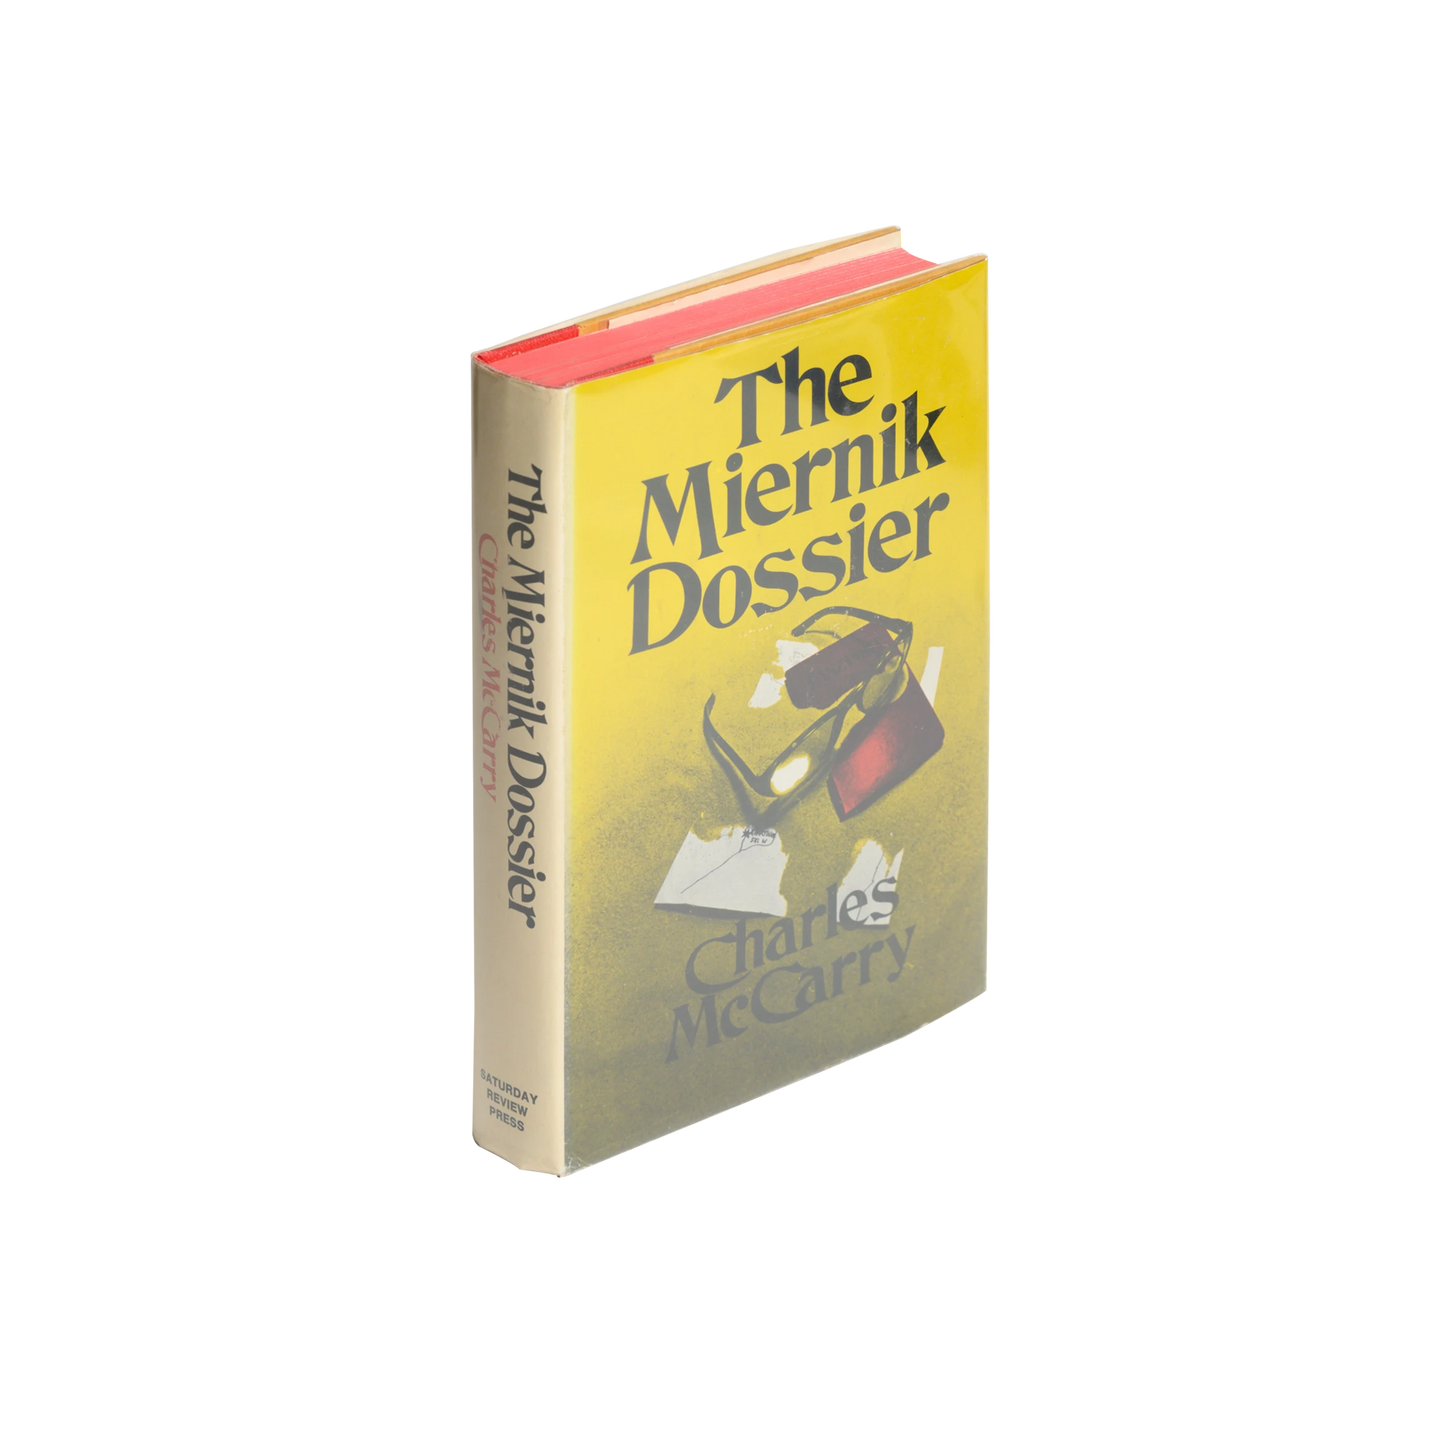 The Miernik Dossier - 